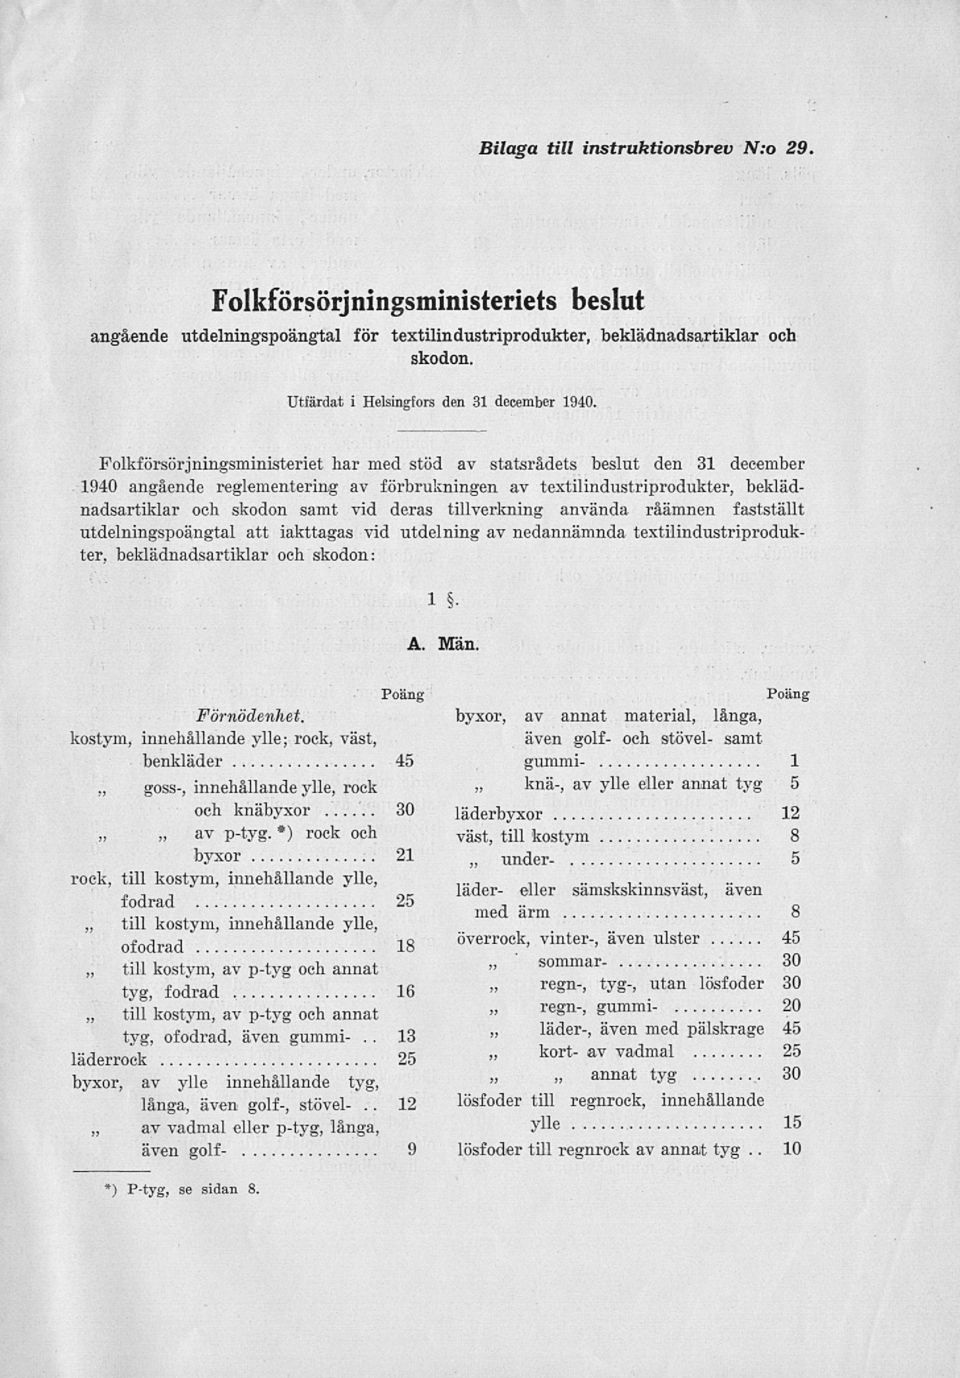 Folkförsörjningsministeriet har med stöd av statsrådets beslut den 31 december 1940 angående reglementering av förbrukningen av textilindustriprodukter, beklädnadsartiklar och skodon samt vid deras